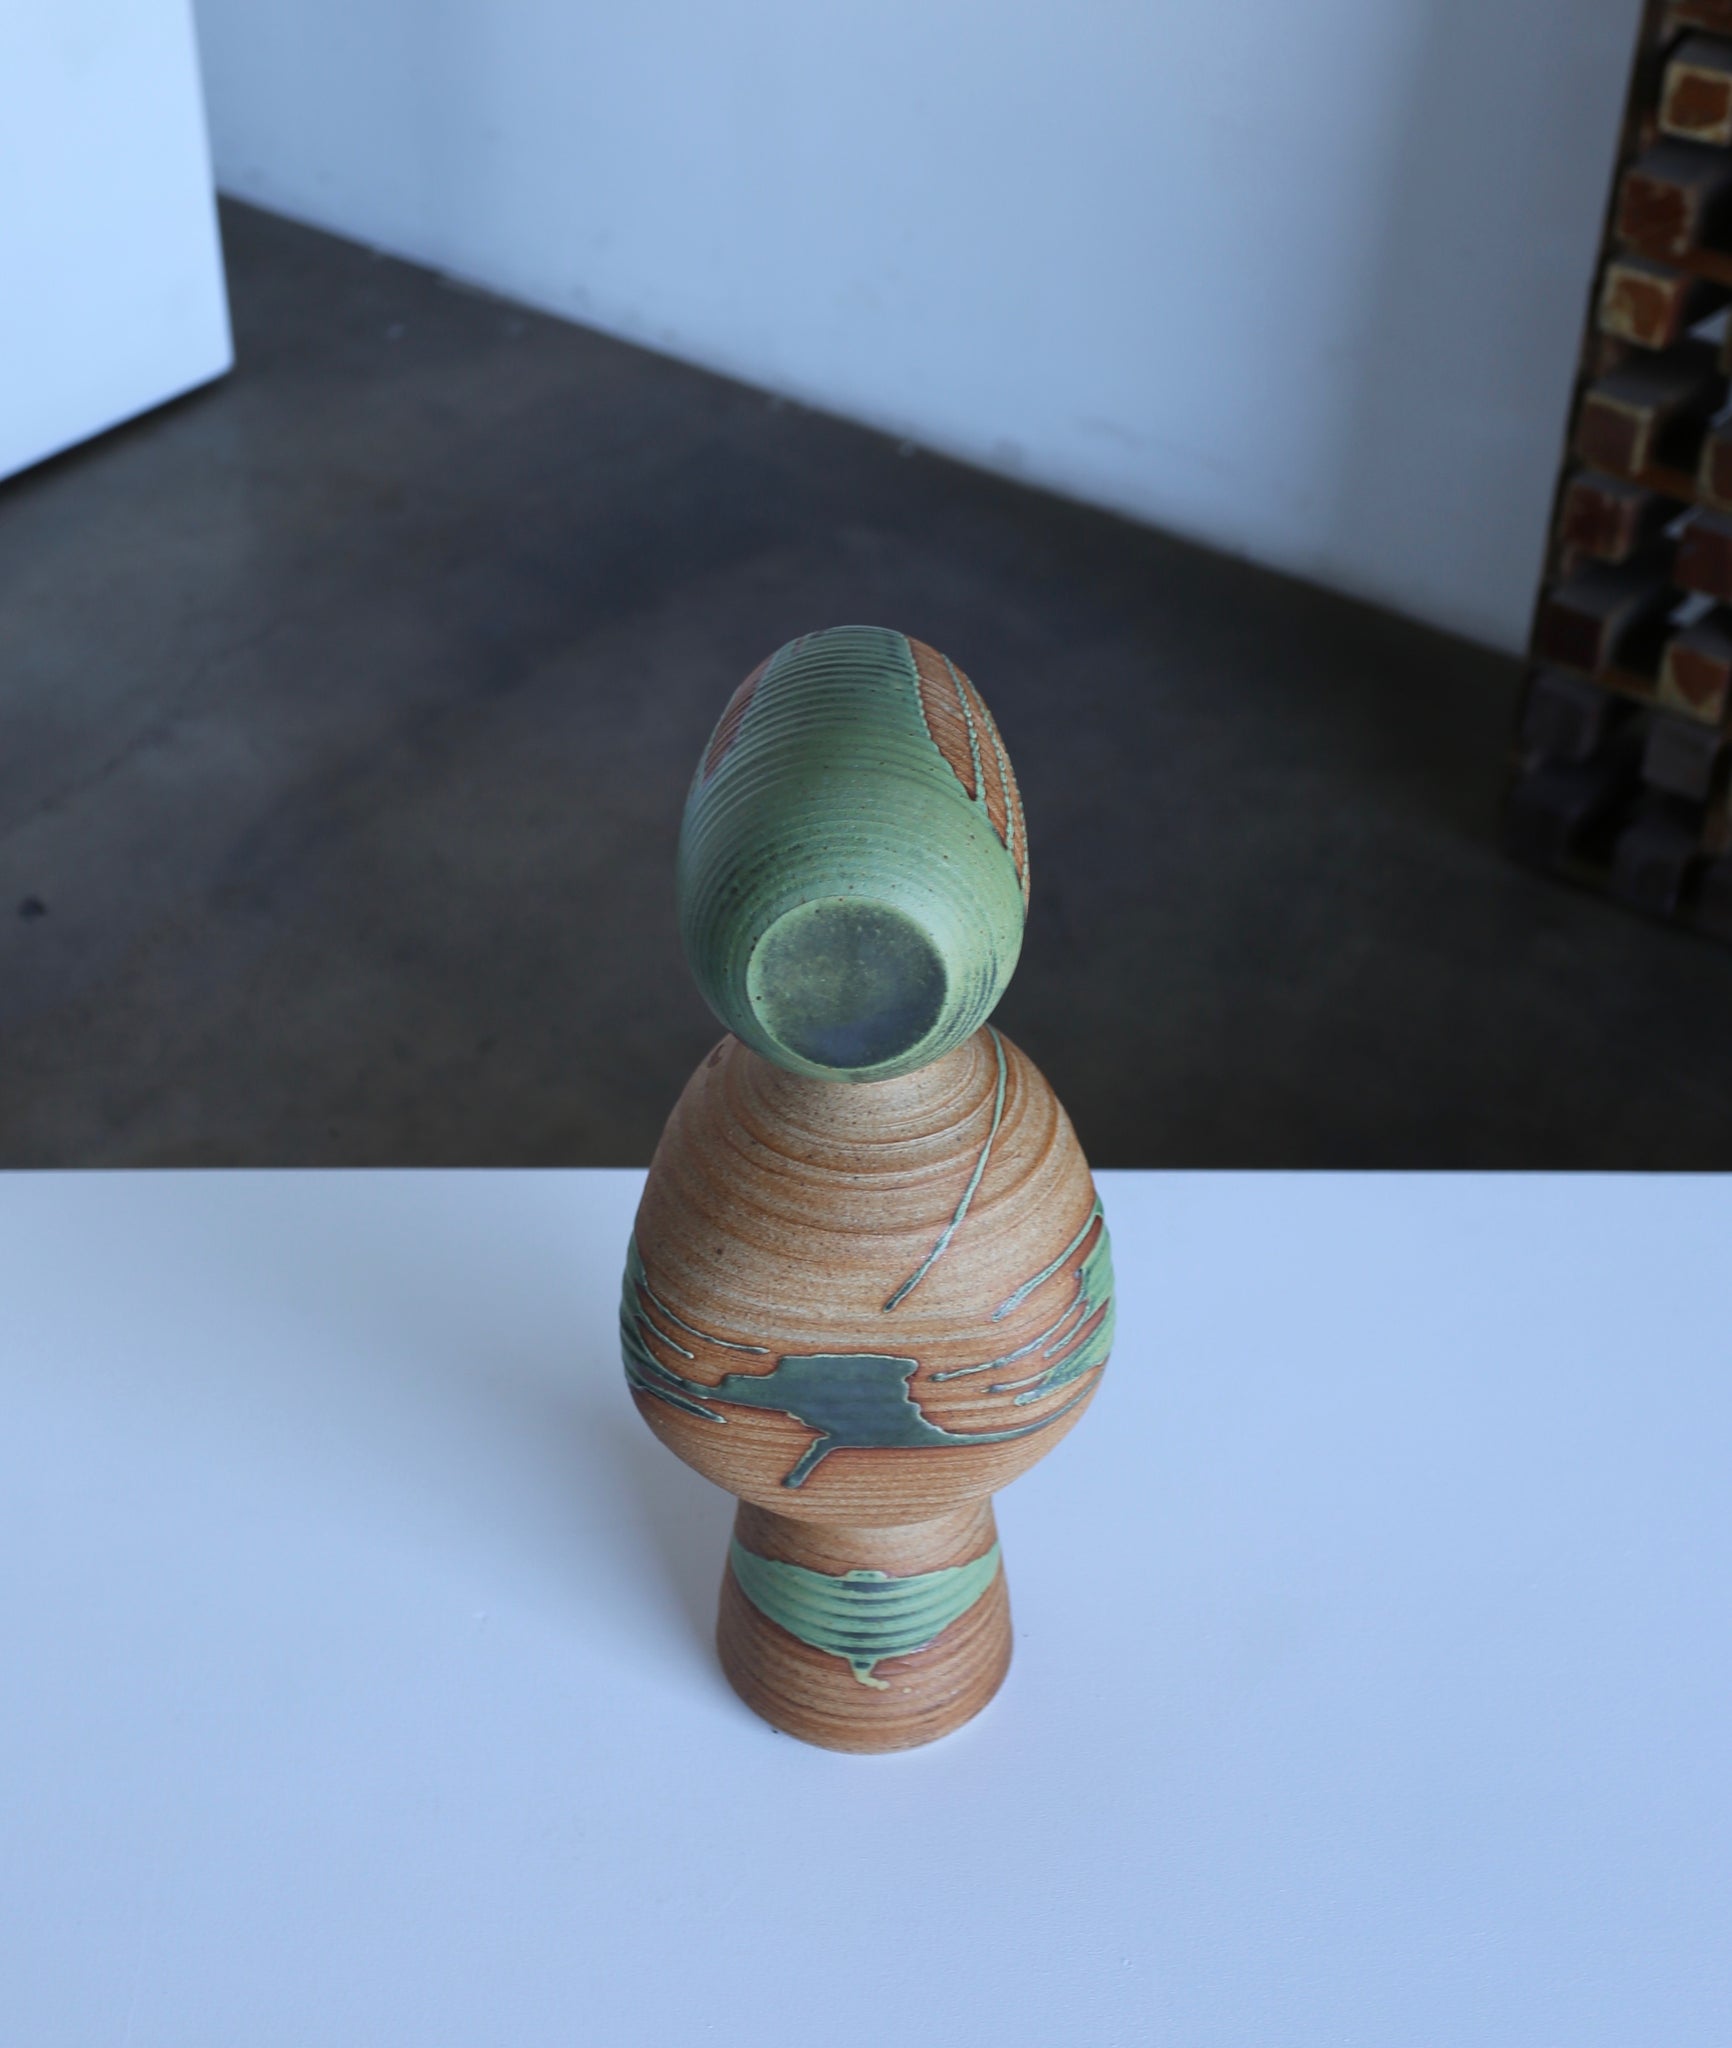 = SOLD = Tim Keenan Ceramic Sculpture